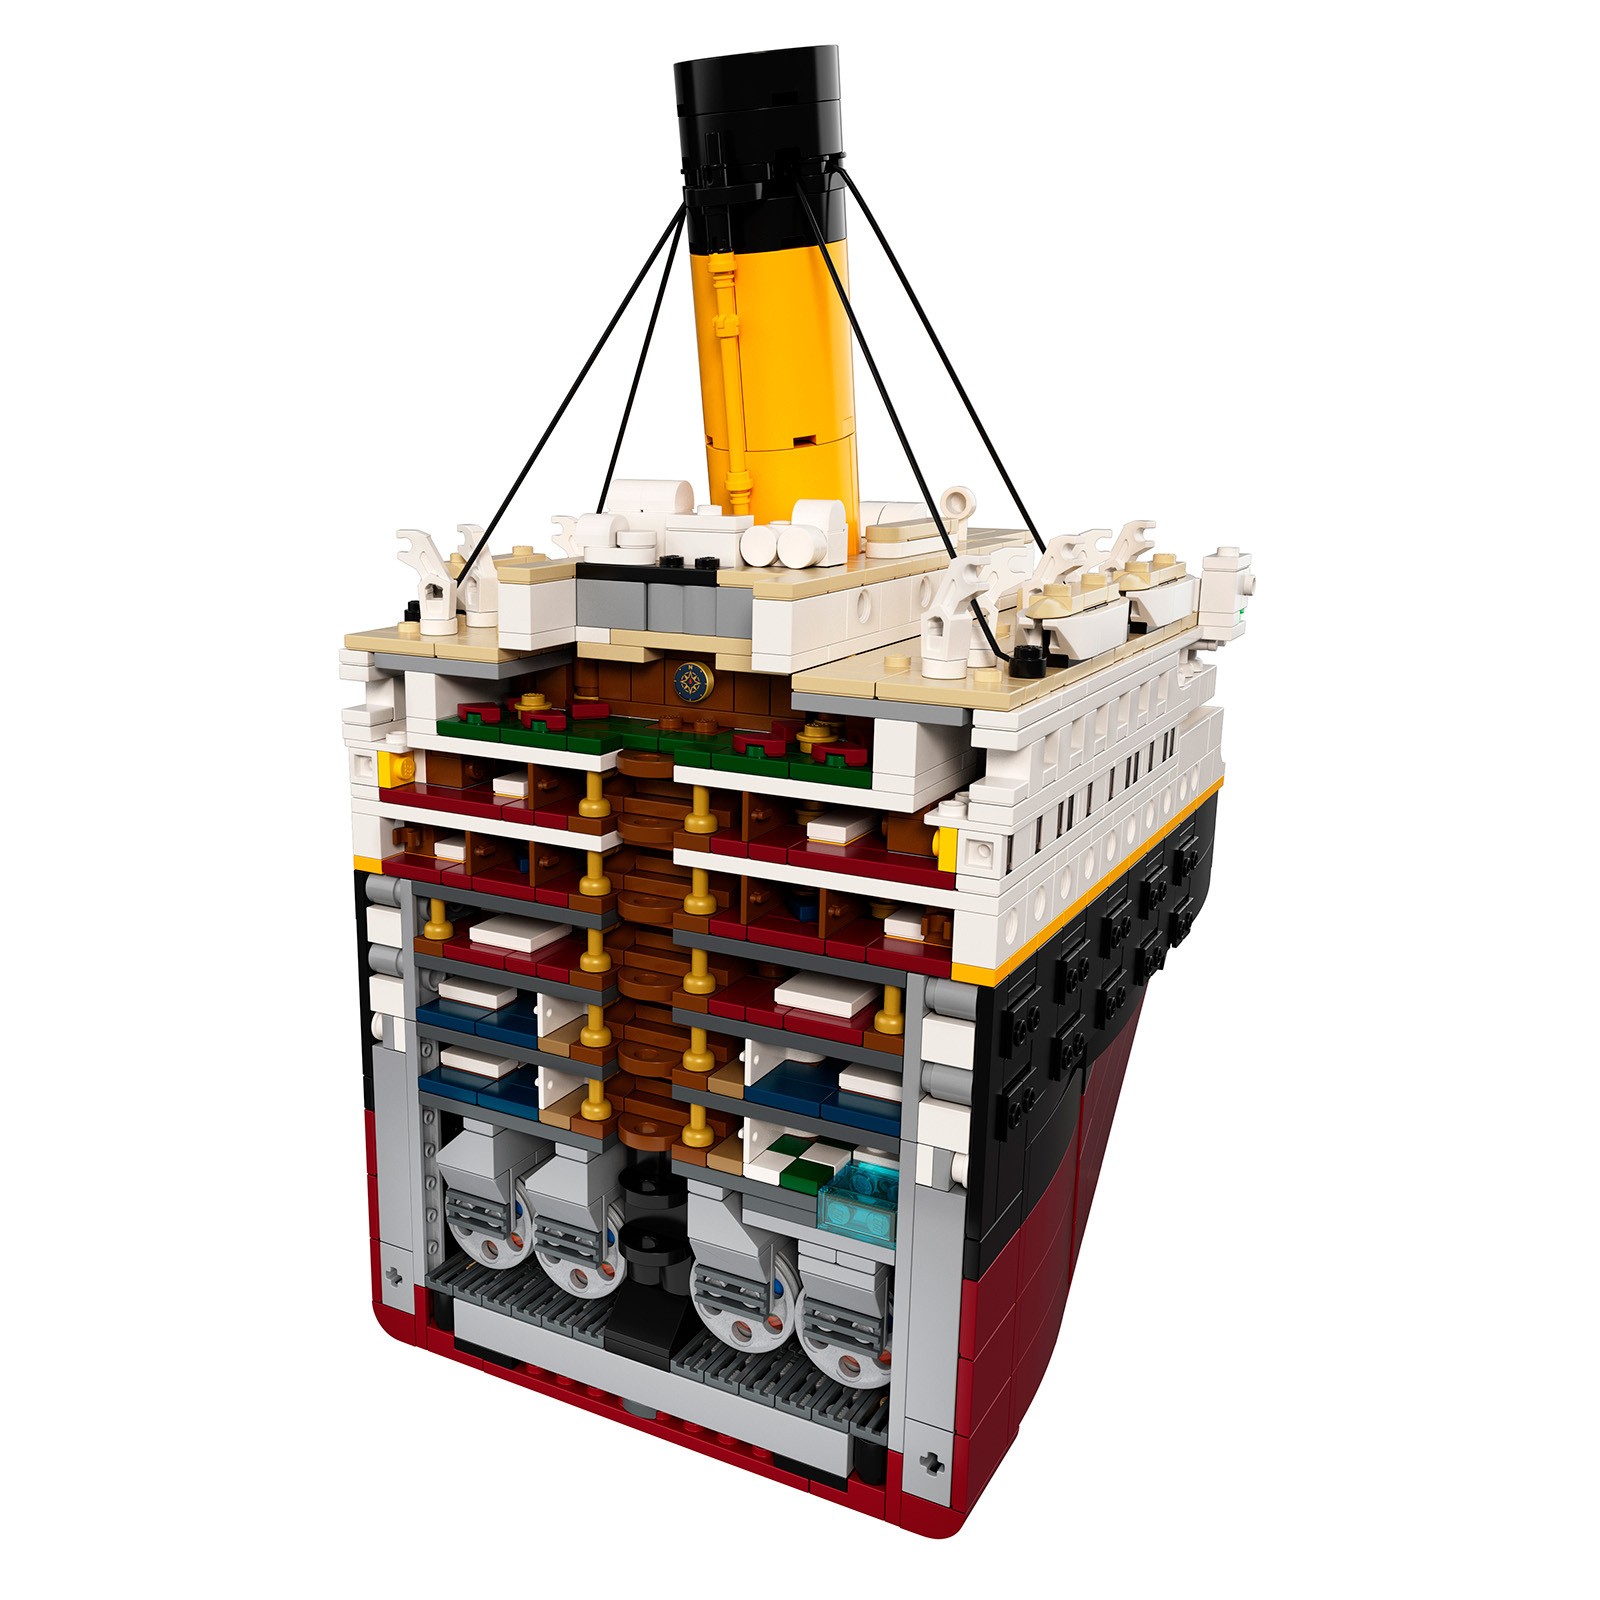 乐高推出泰坦尼克号拼装模型 9090块颗粒 售价5499元